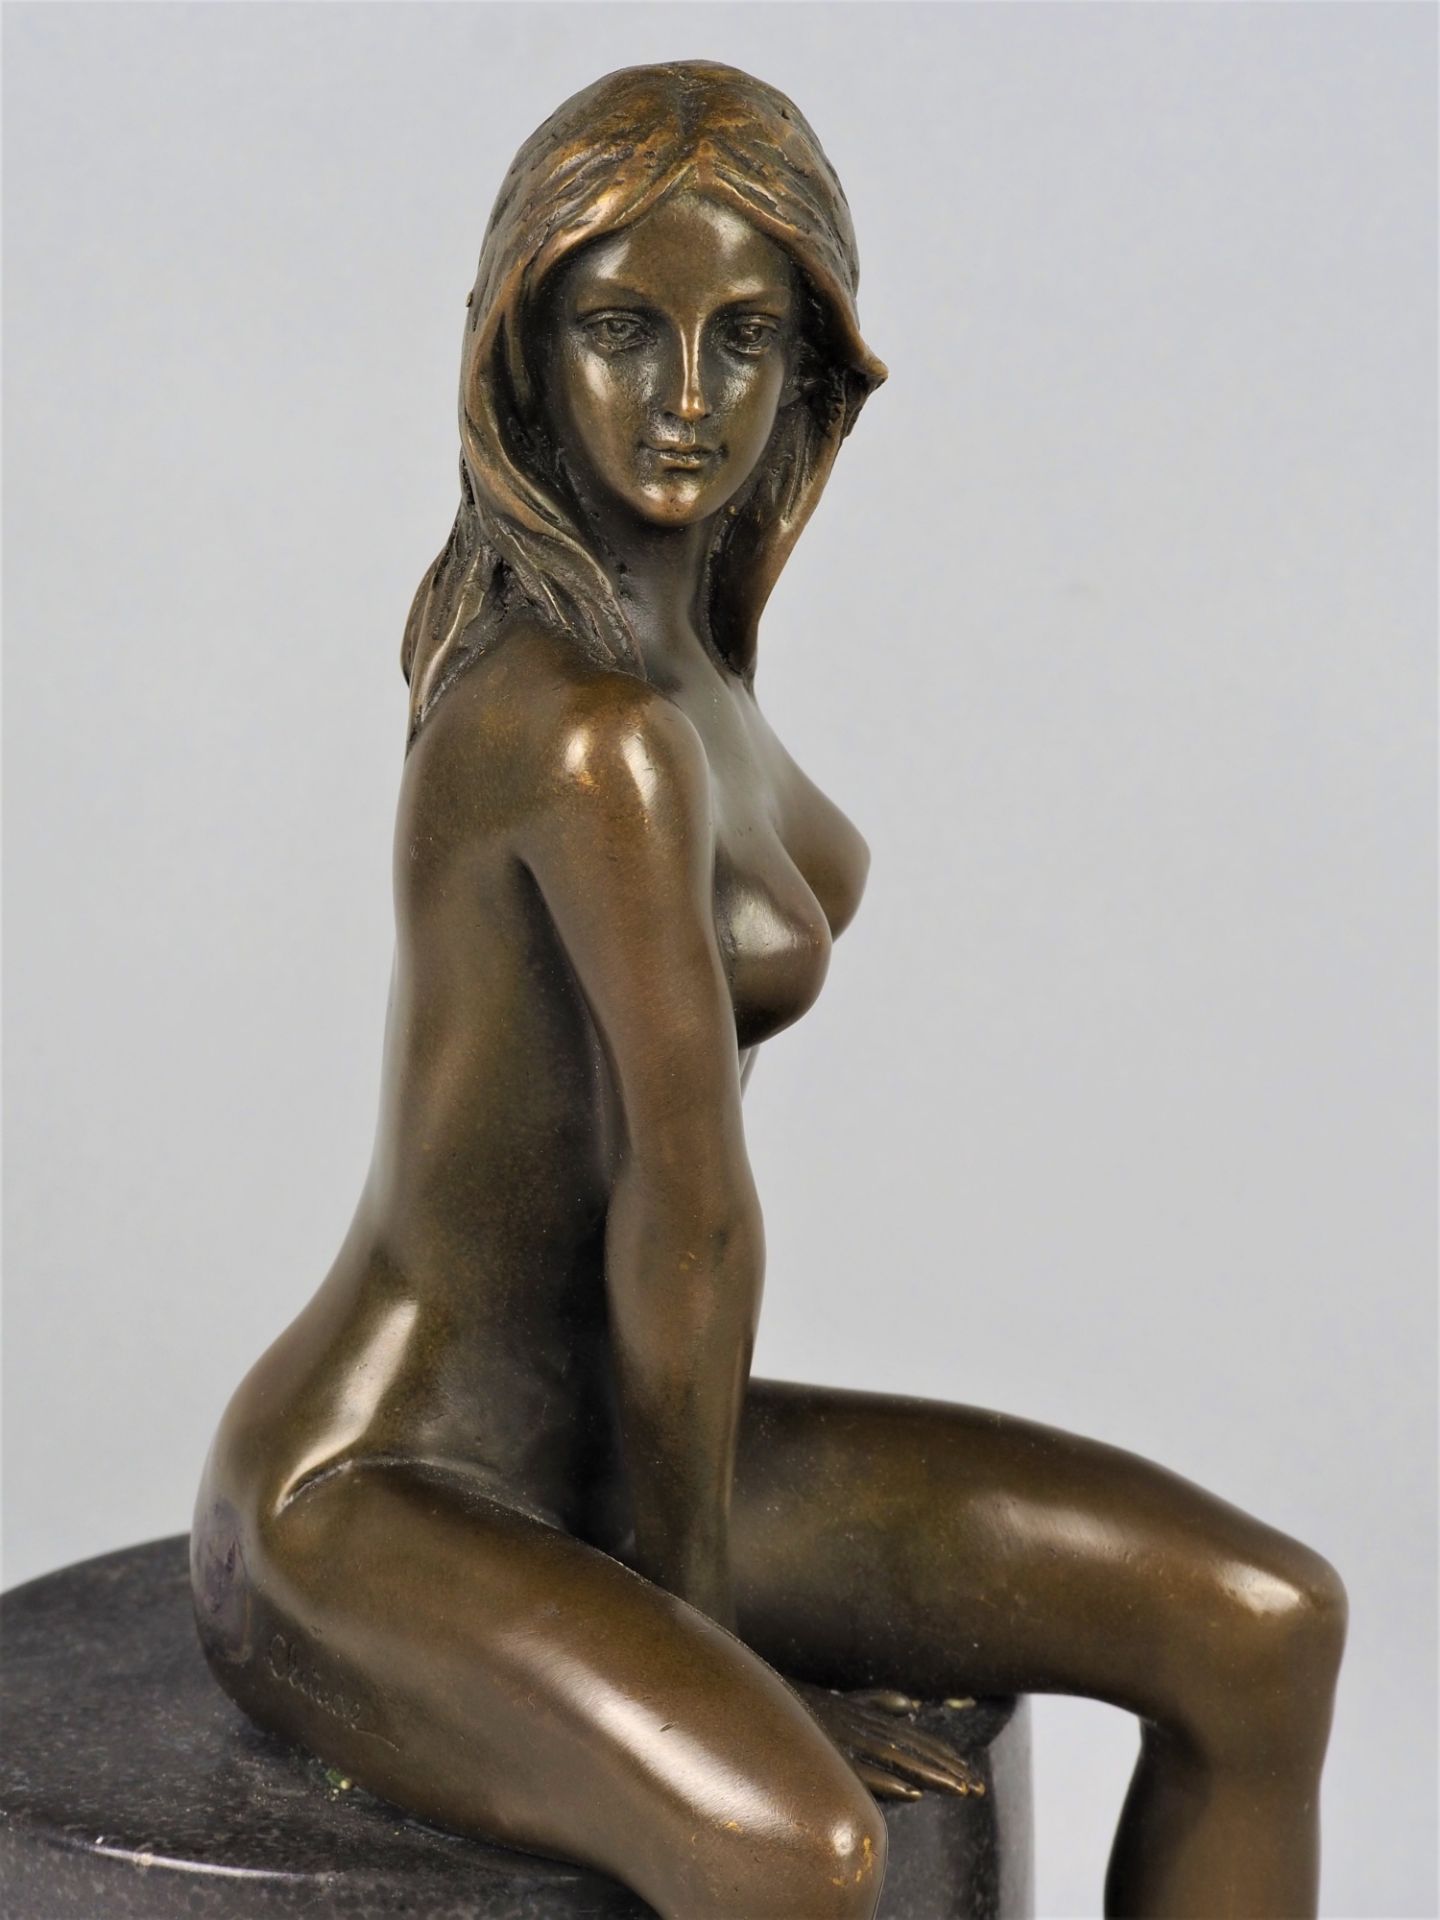 Bronzeskulptur weiblicher Akt "Claude",  evtl. J. B Deposse, Paris, 20. Jh.  - Bild 3 aus 4